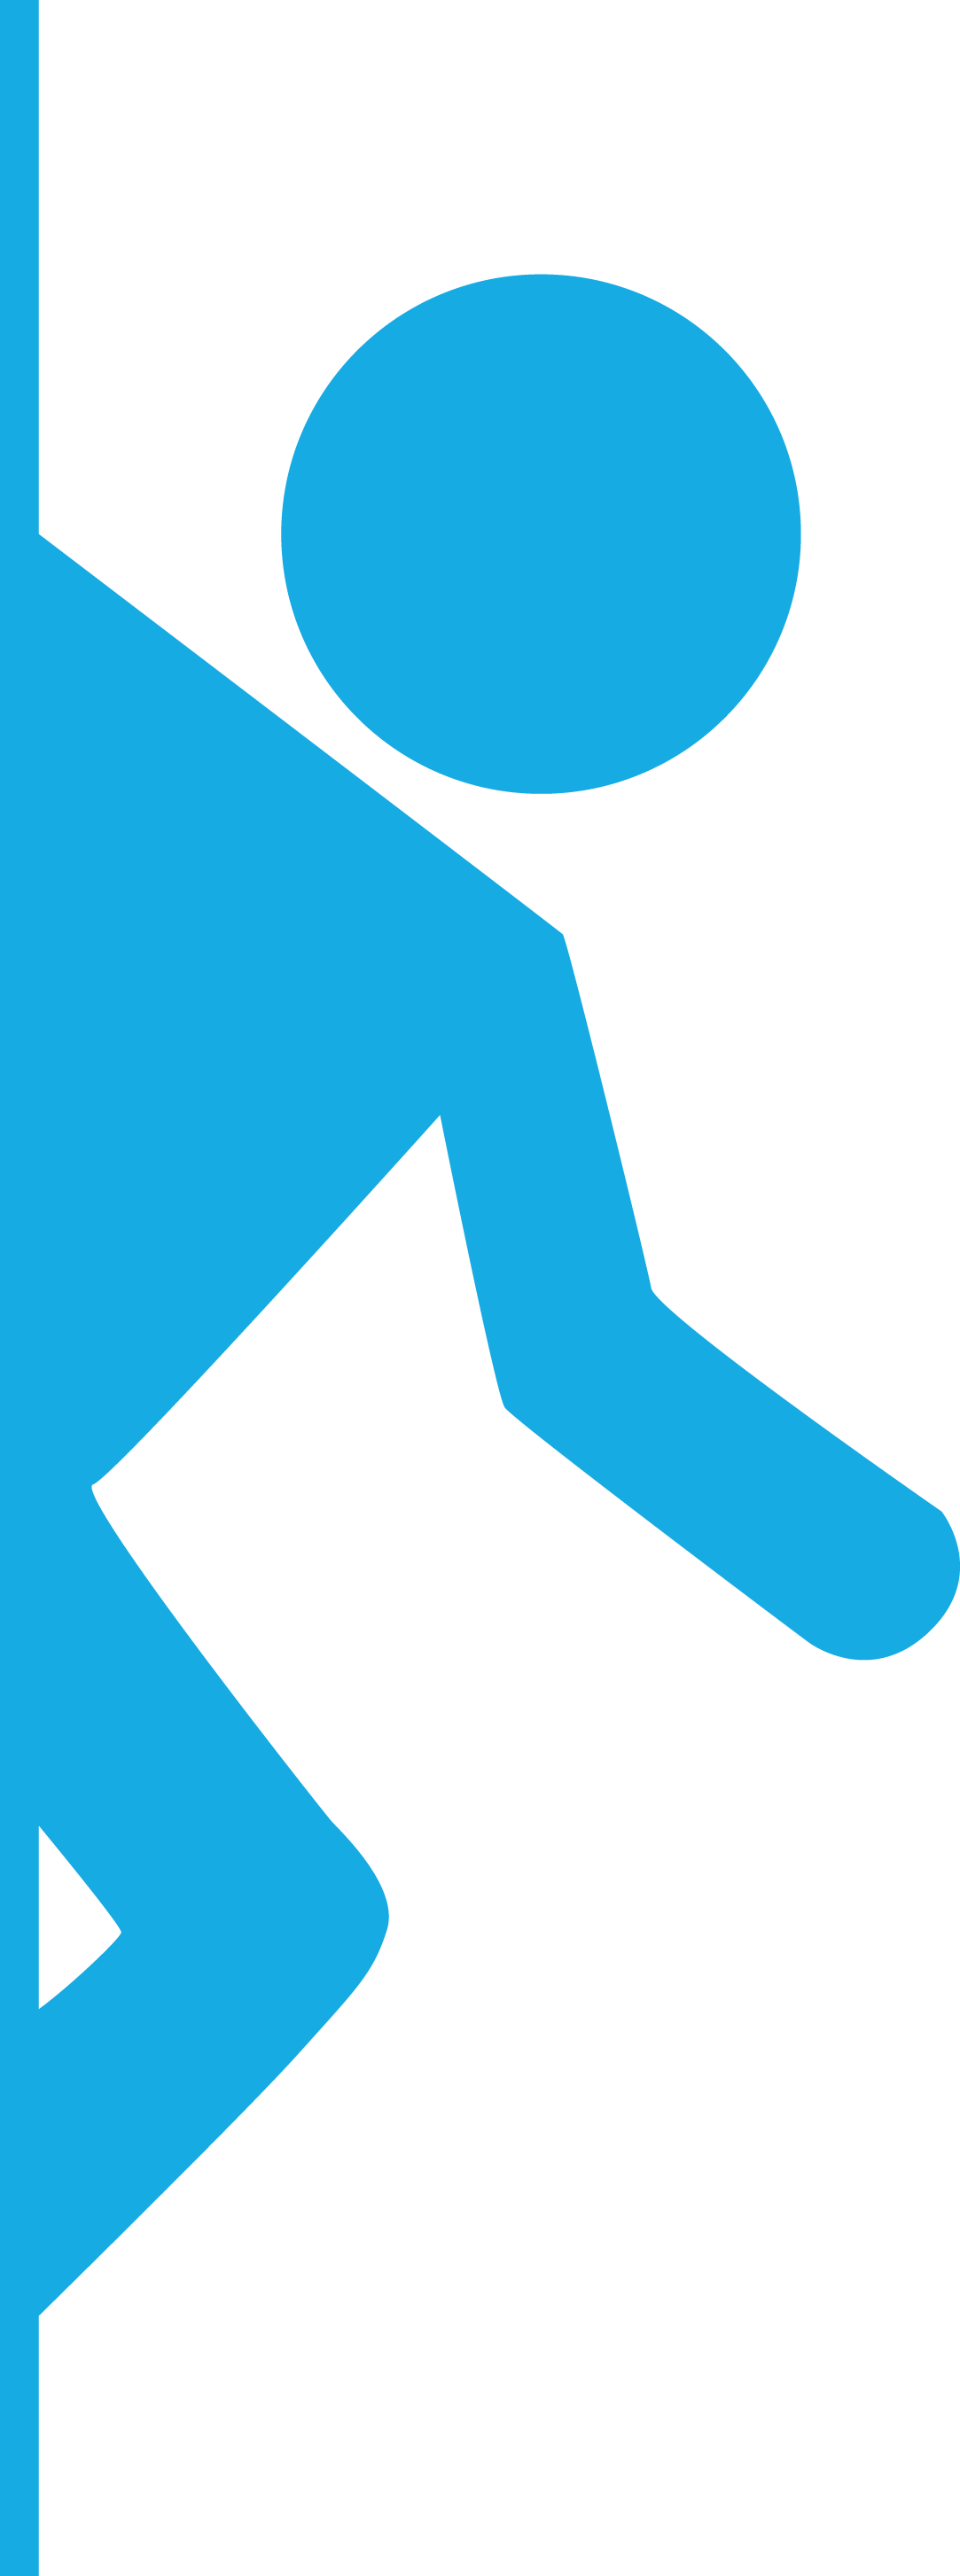 Portal 2 - Logo Runner - Blue